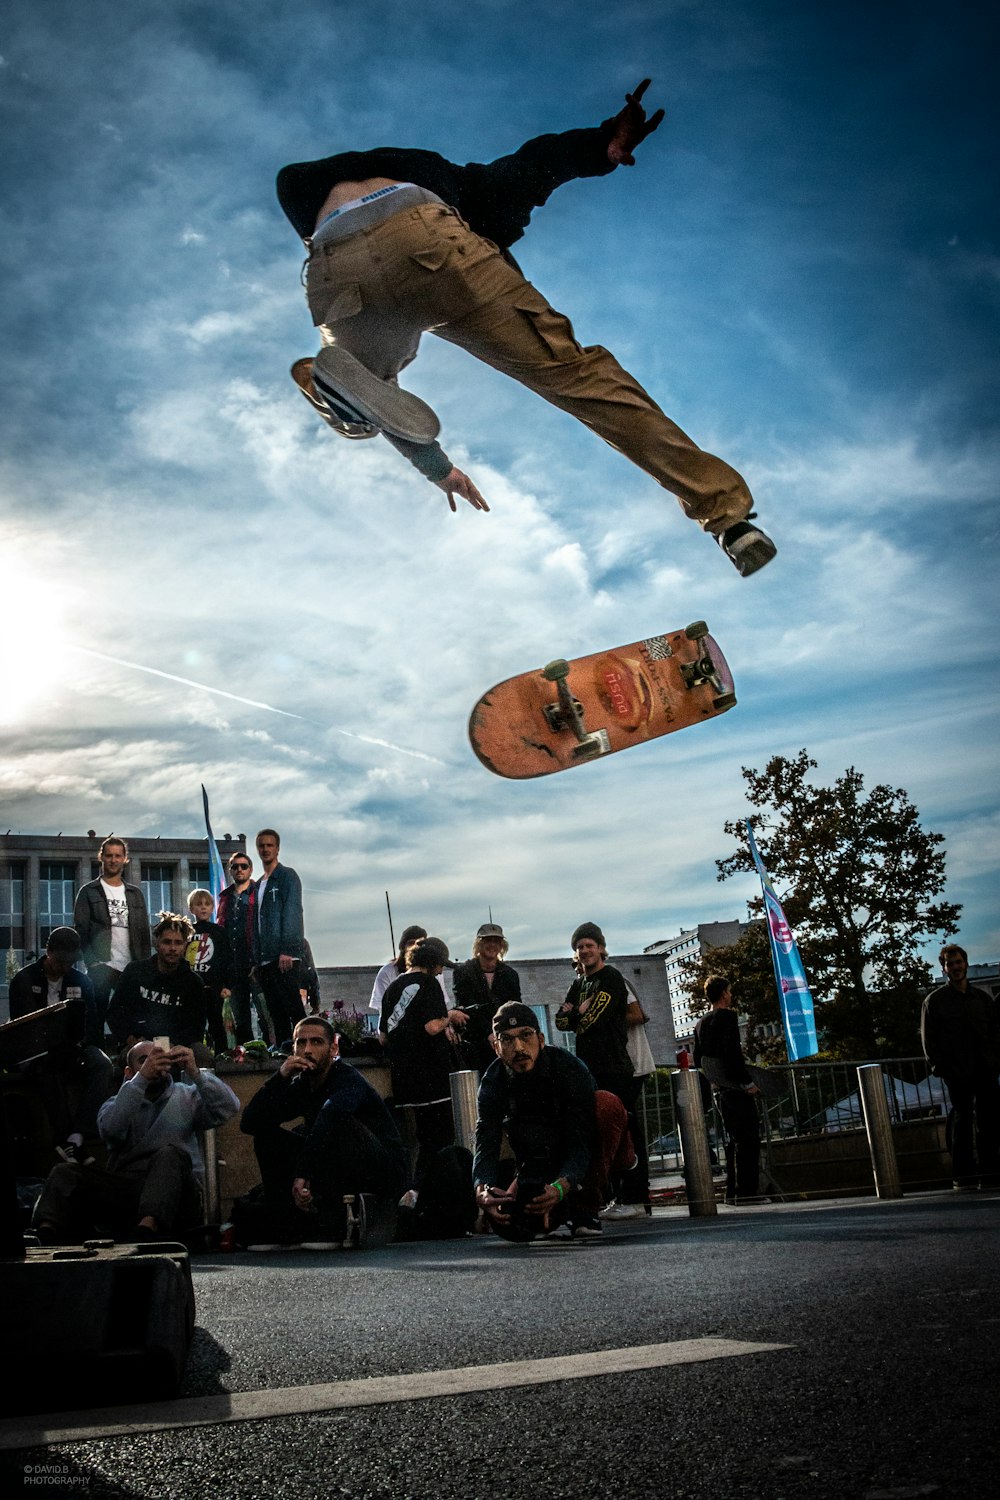 man skateboarding doing tricks on air